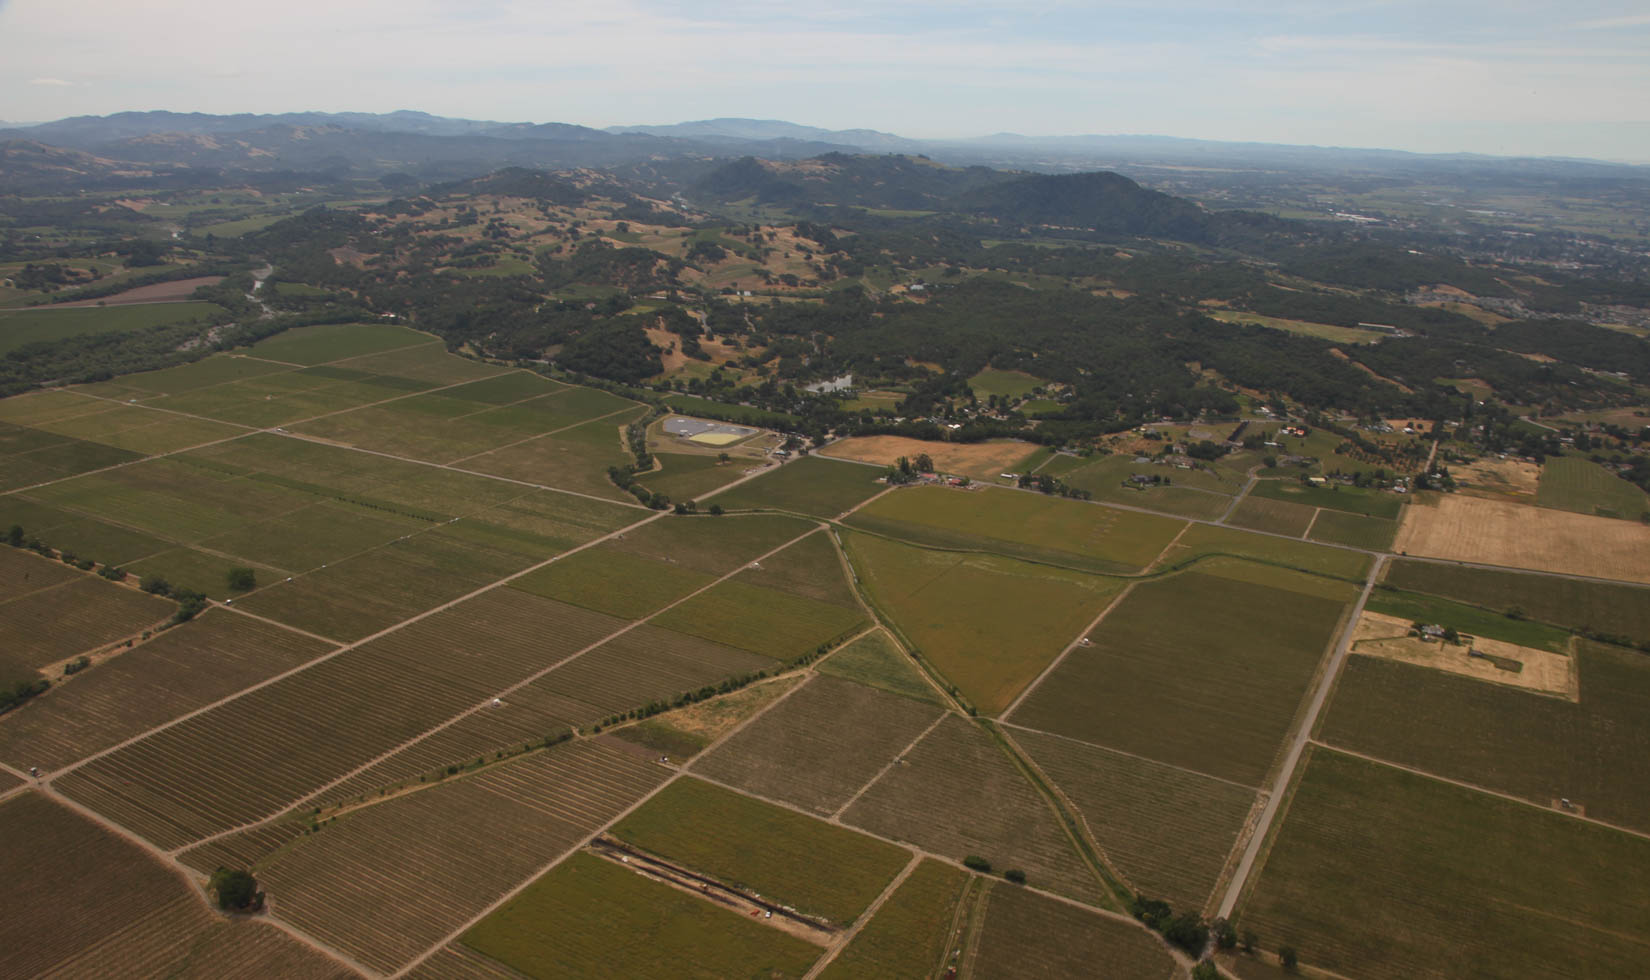 Aerial view of the original Jordan Winery valley floor vineyards